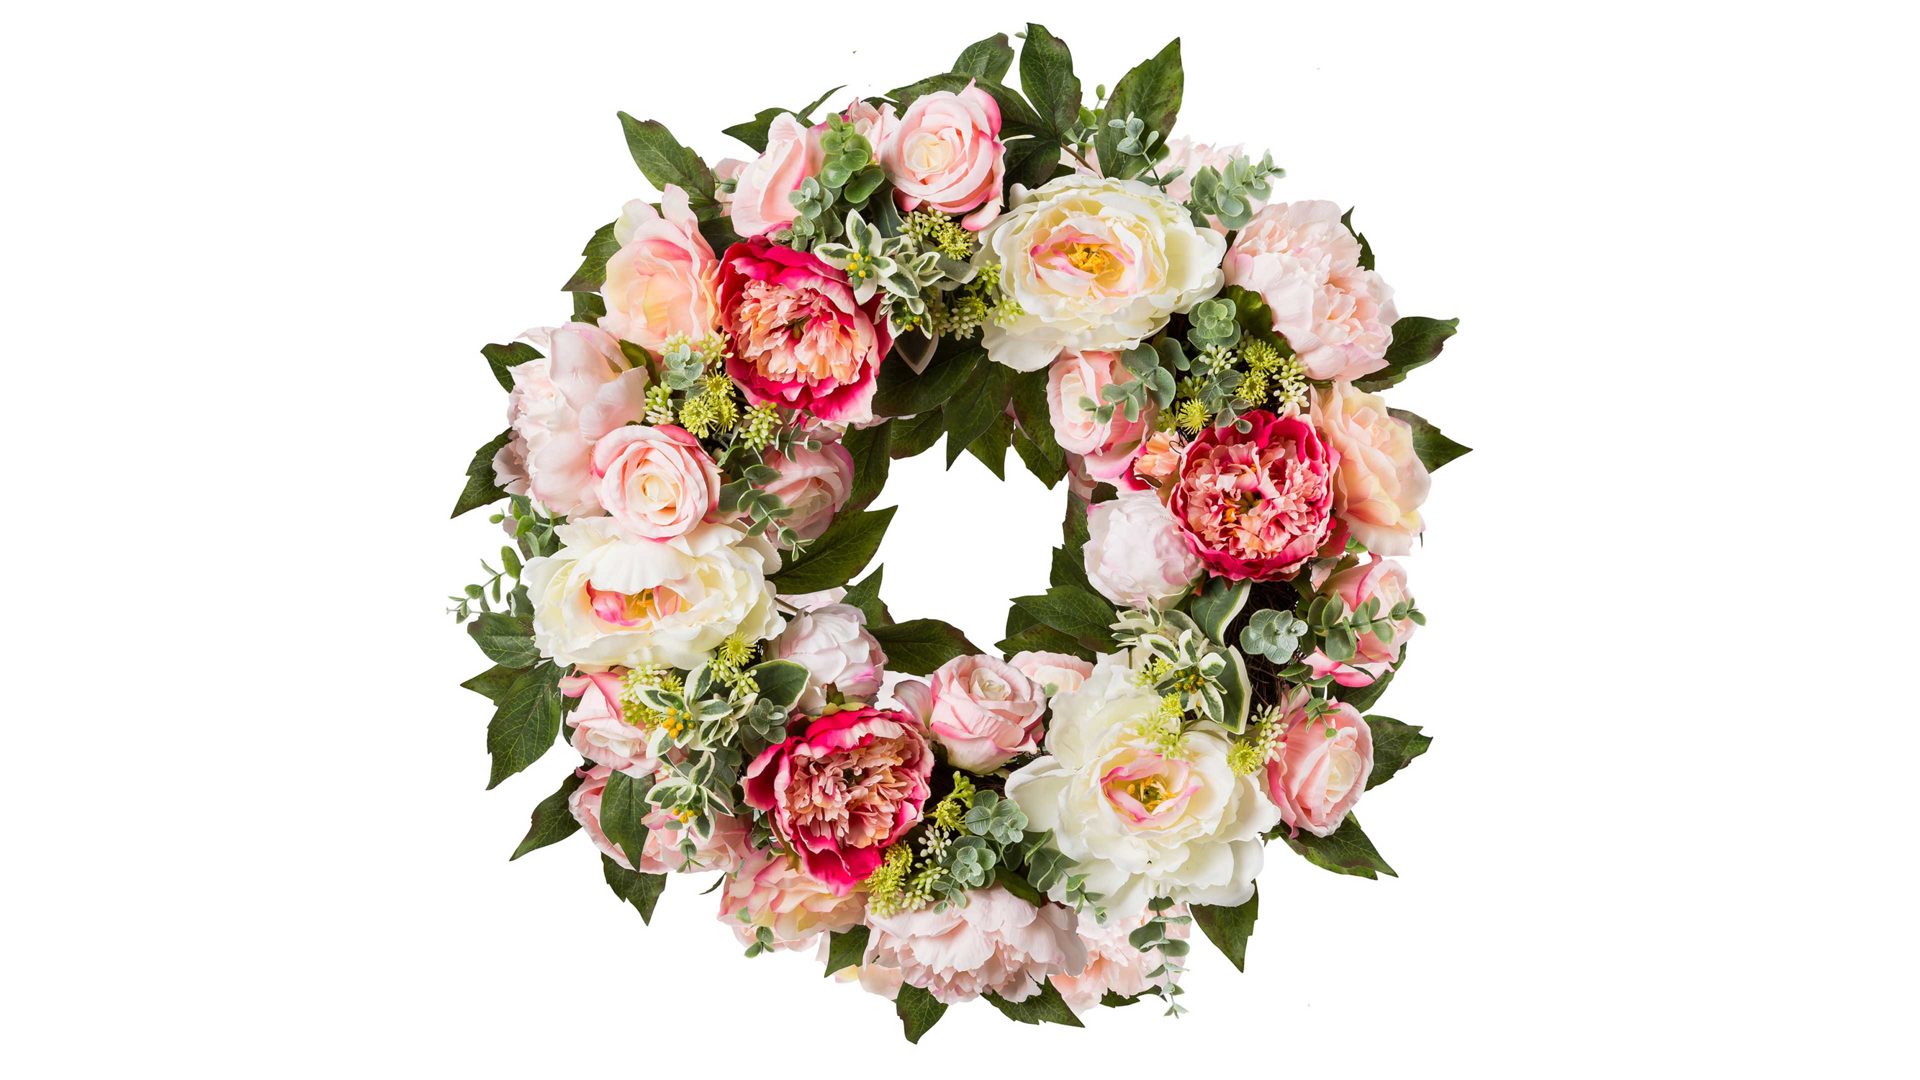 Kranz Gasper gmbh aus Stoff in Pastell Rosen- & Pfingstrosenkranz rosefarbene und weiße Textilblüten – Durchmesser ca. 62 cm